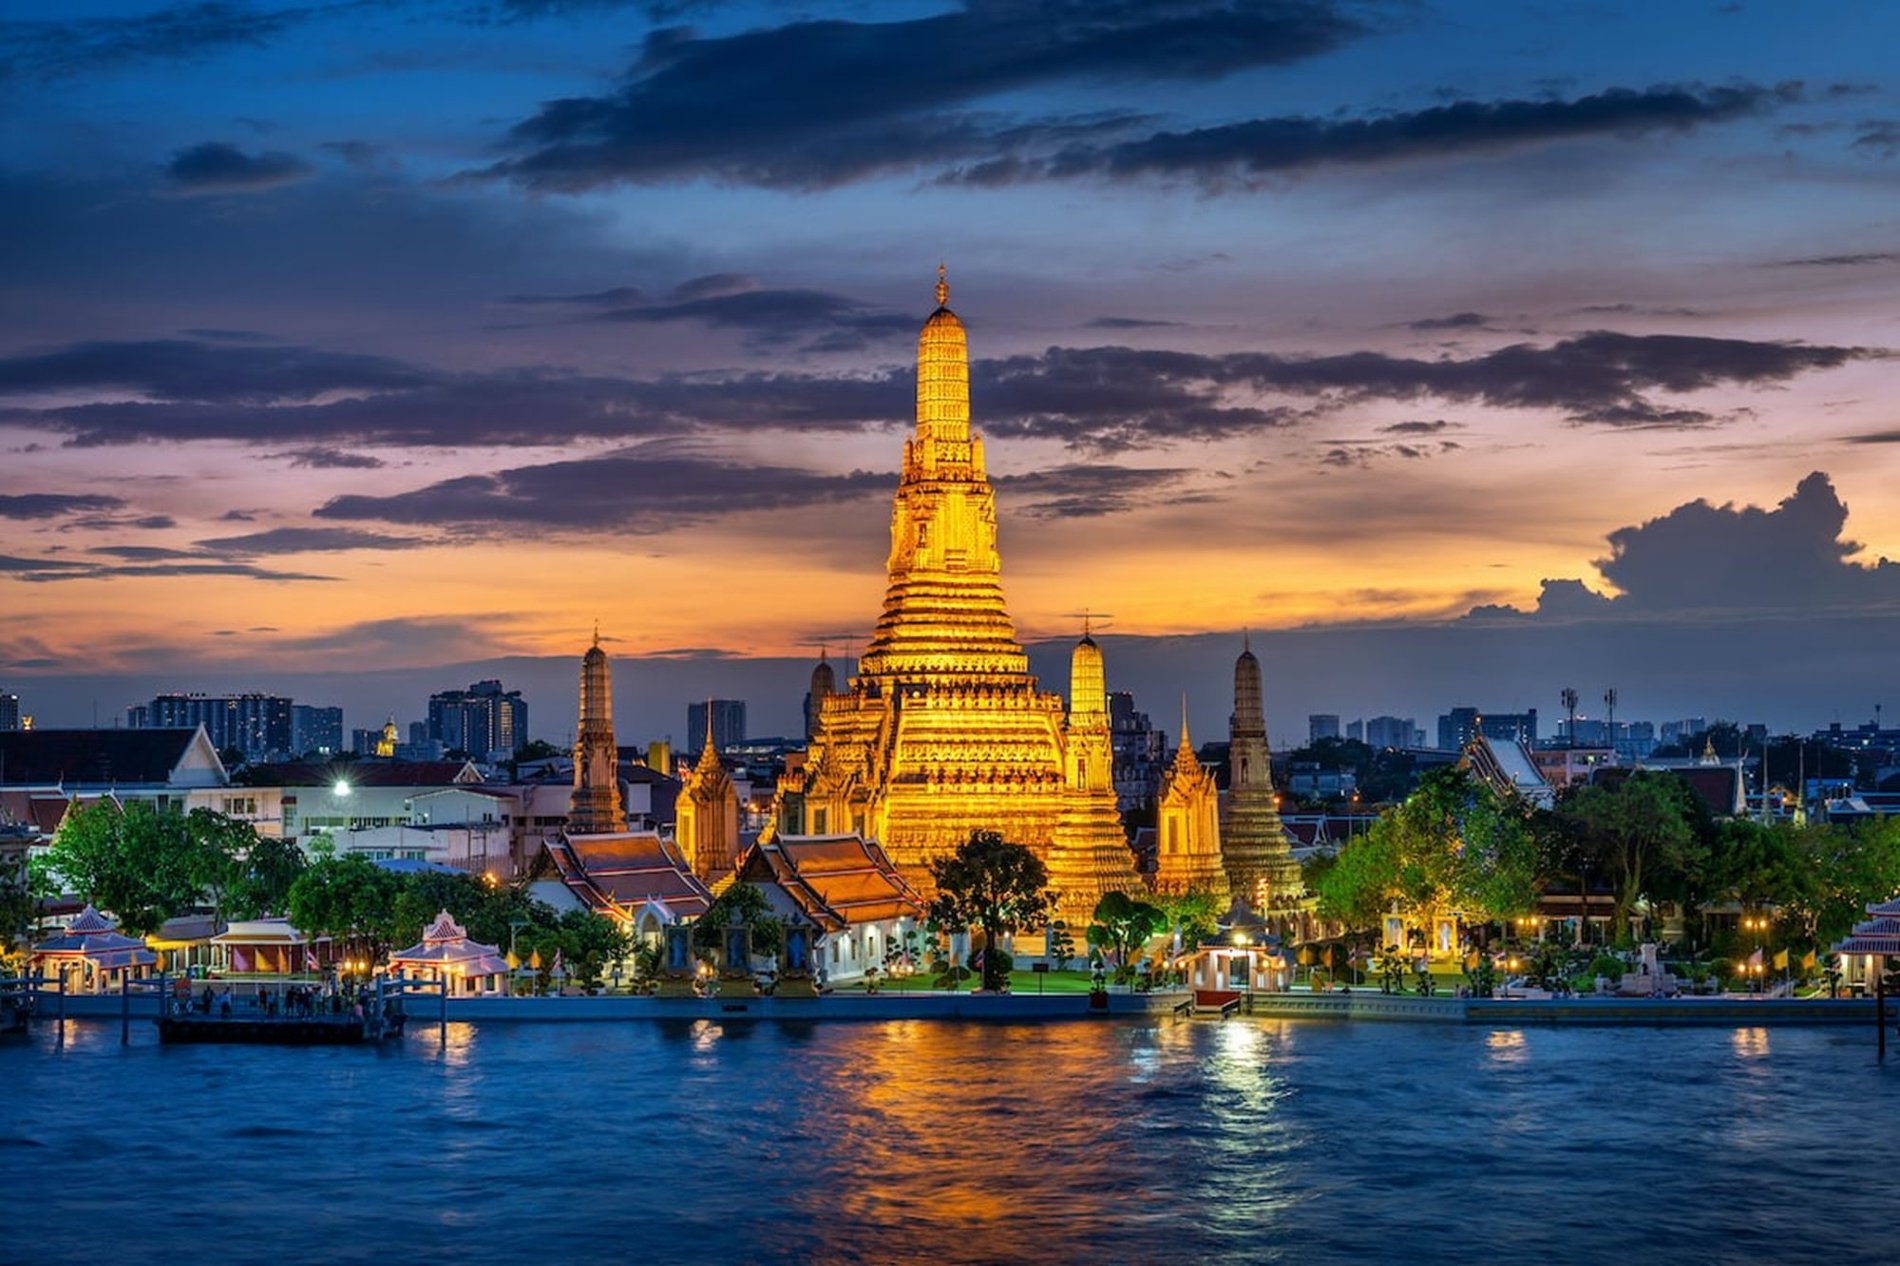 10 things to do in Bangkok